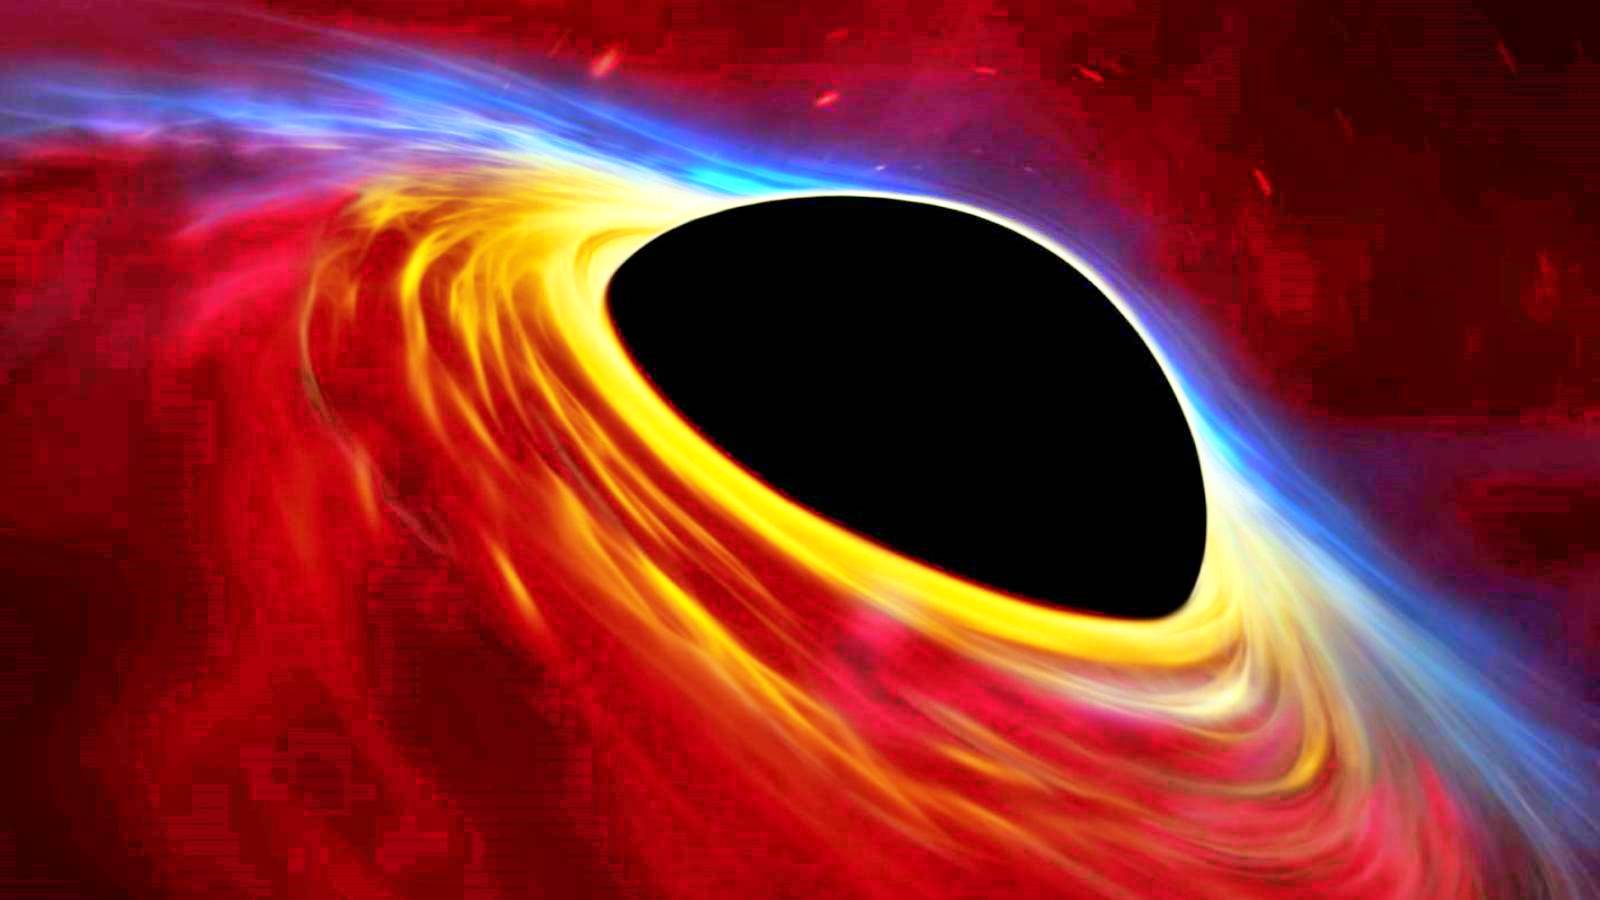 ONGELOOFLIJK Zwart Gat onder de indruk van mensen Wetenschap onthult geheim van het heelal